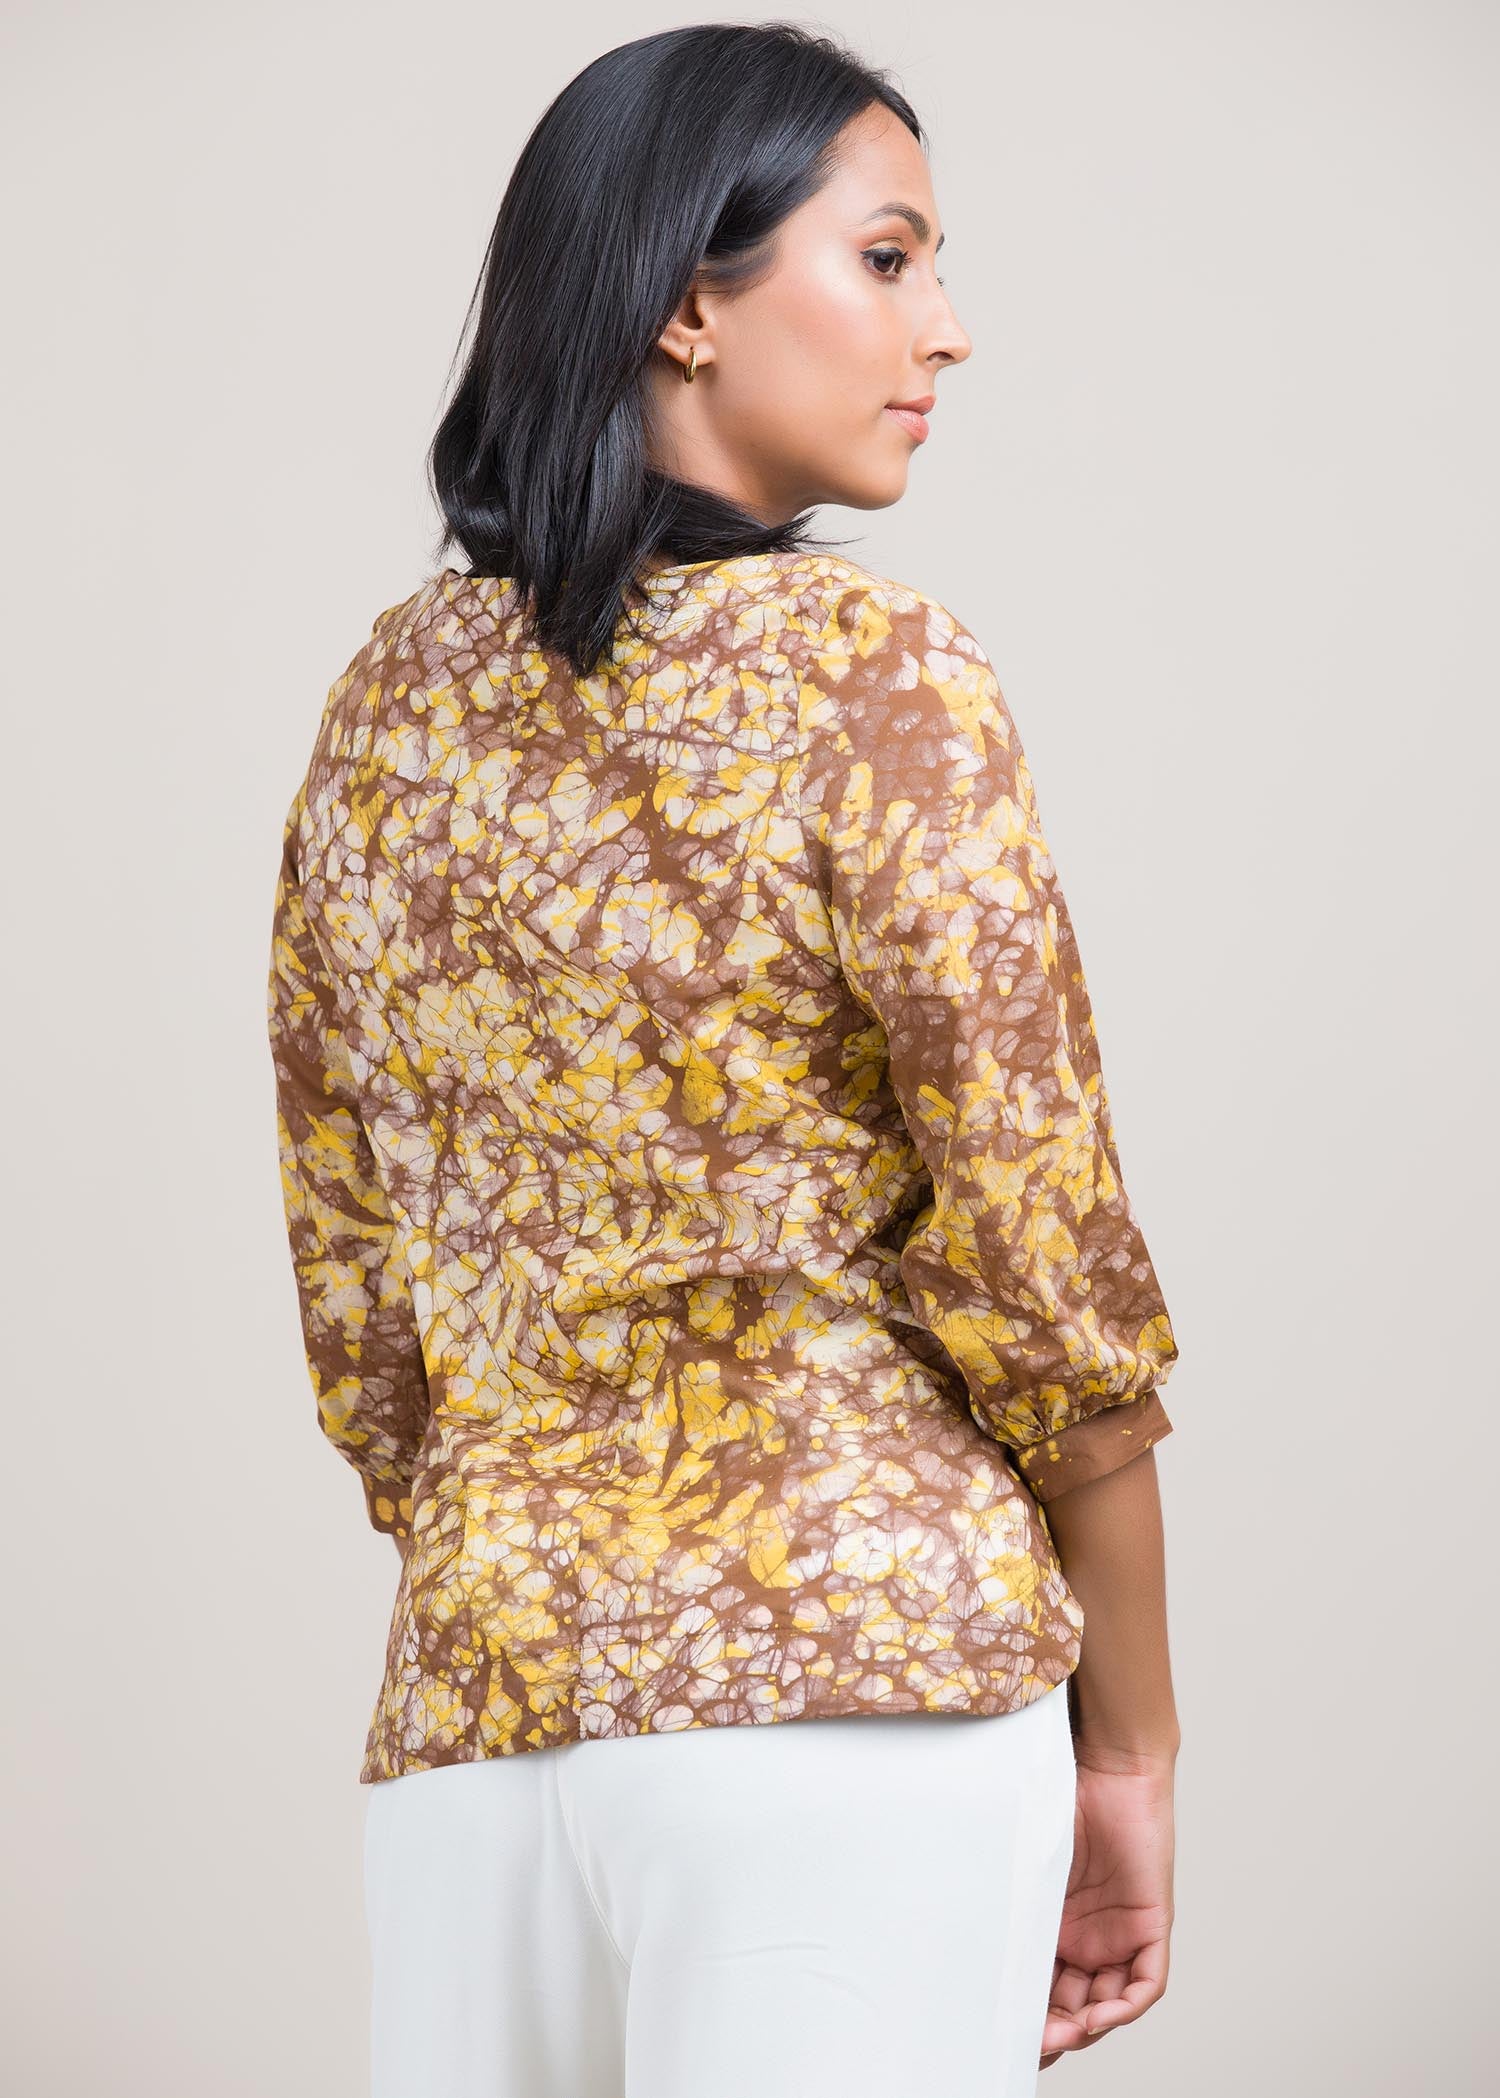 spots batik printed blouse